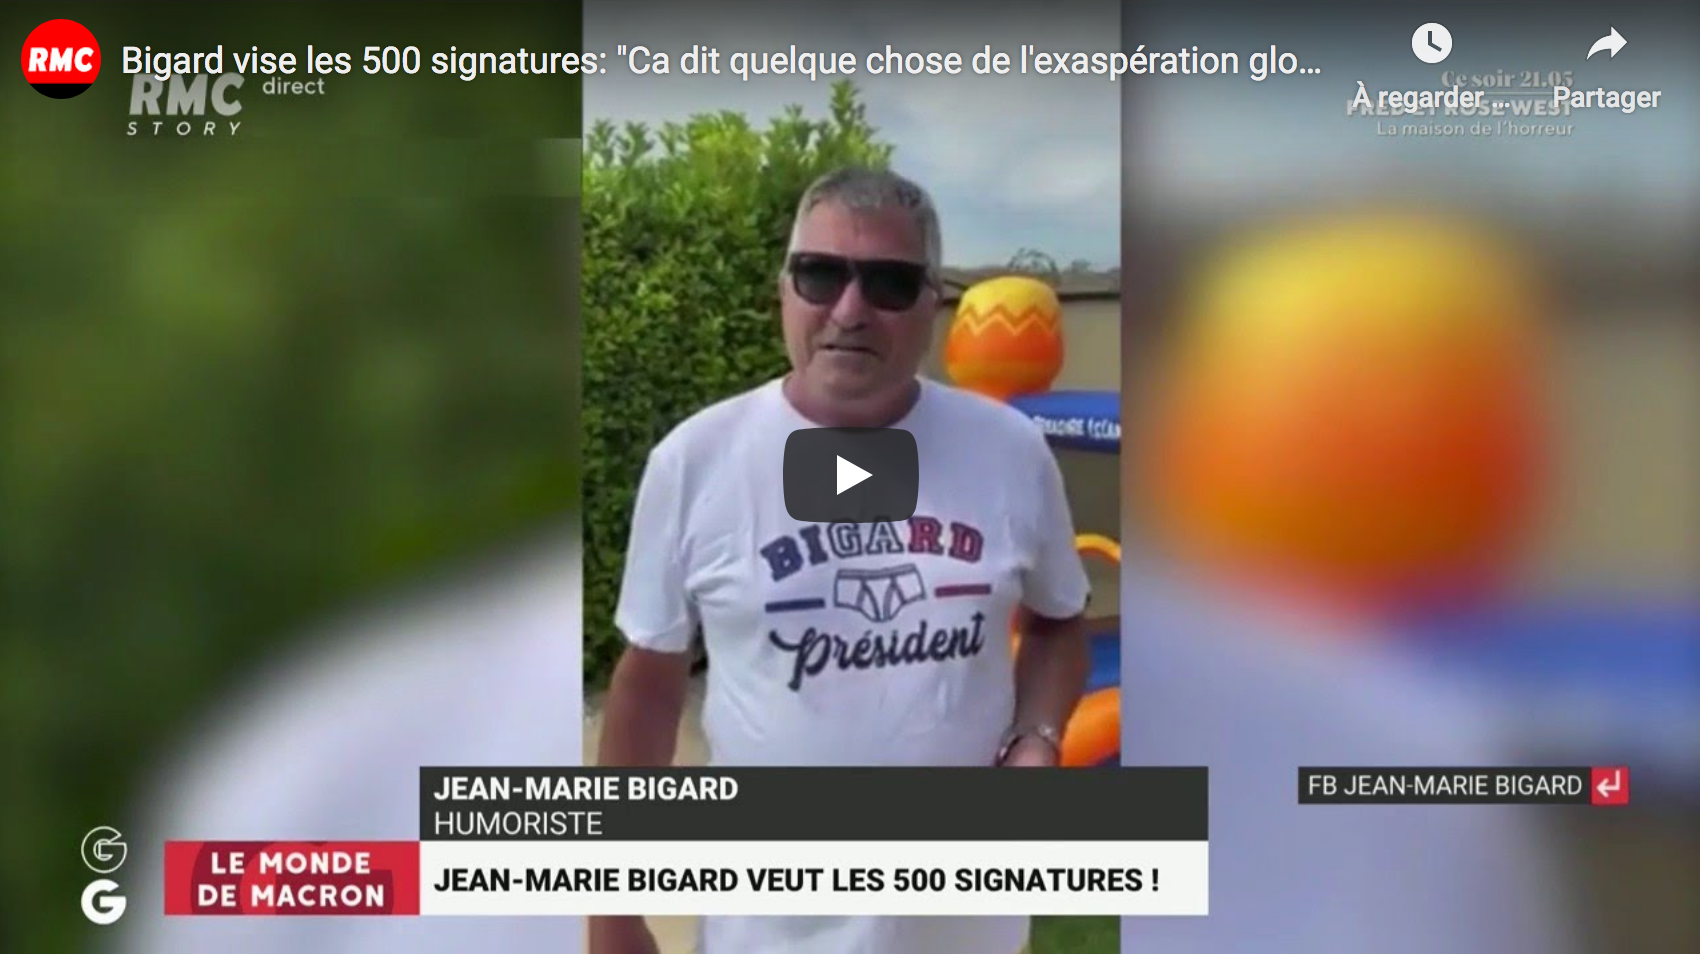 Jean-Marie Bigard vise les 500 signatures pour se présenter en 2022 : “Ça dit quelque chose de l’exaspération globale du pays”